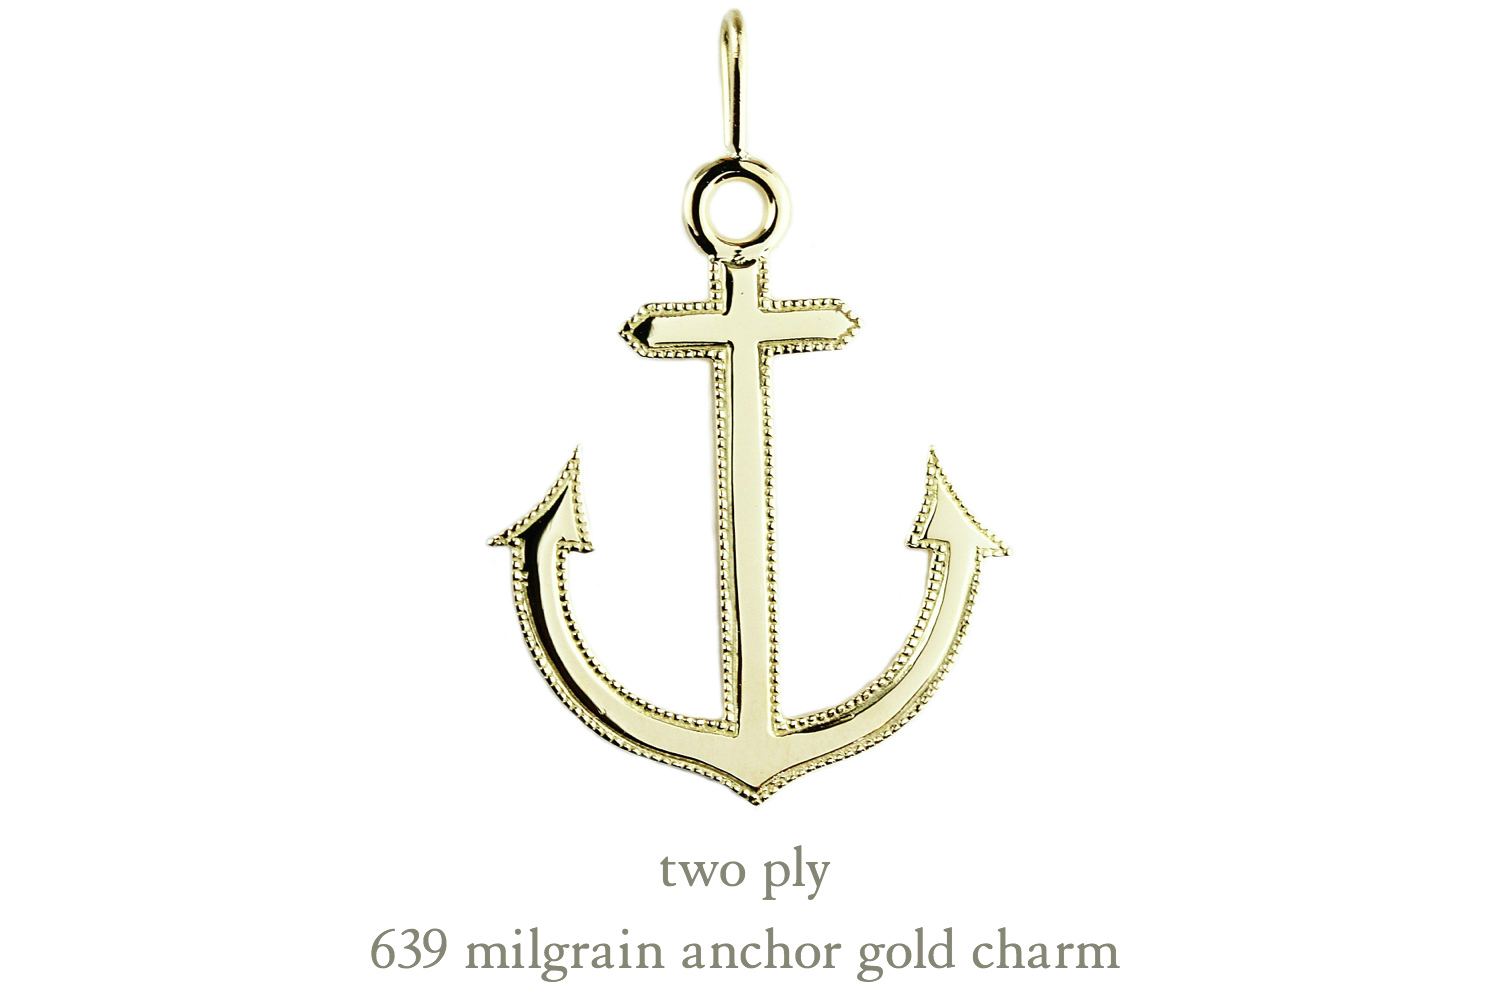 トゥー プライ 639 ミルグレイン アンカー 錨 イカリ ゴールド ネックレス チャーム 18金,two ply Milgrain Anchor Gold Charm K18